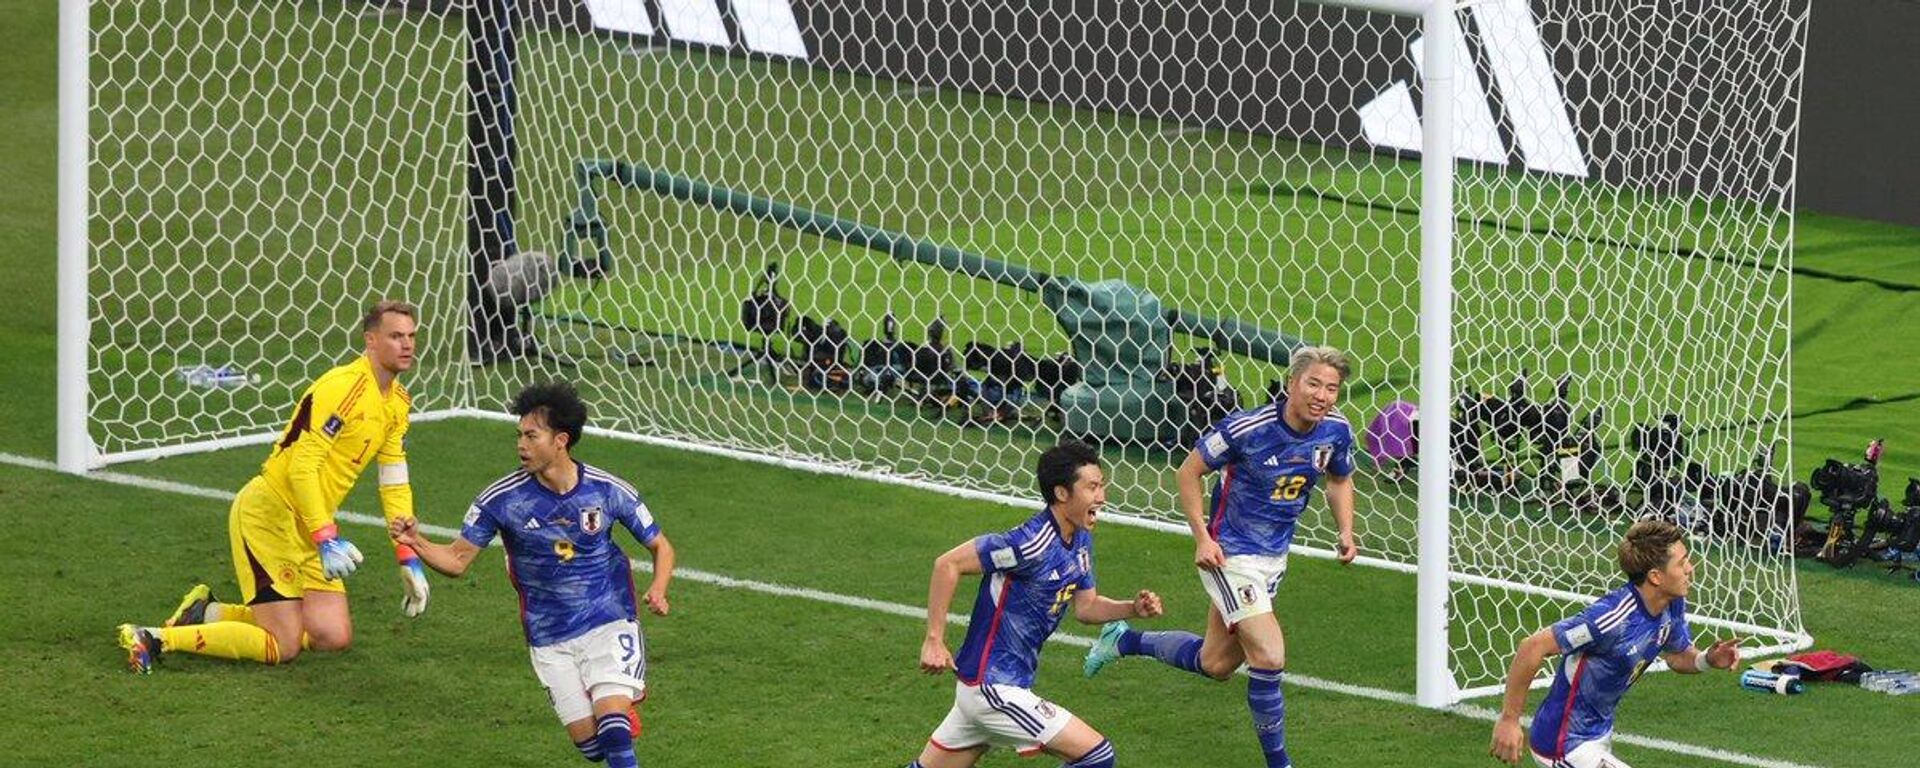 FIFA 2022 Dünya Kupası'nda bir sürpriz daha: Japonya, Almanya'yı 2-1 mağlup etti - Sputnik Türkiye, 1920, 23.11.2022